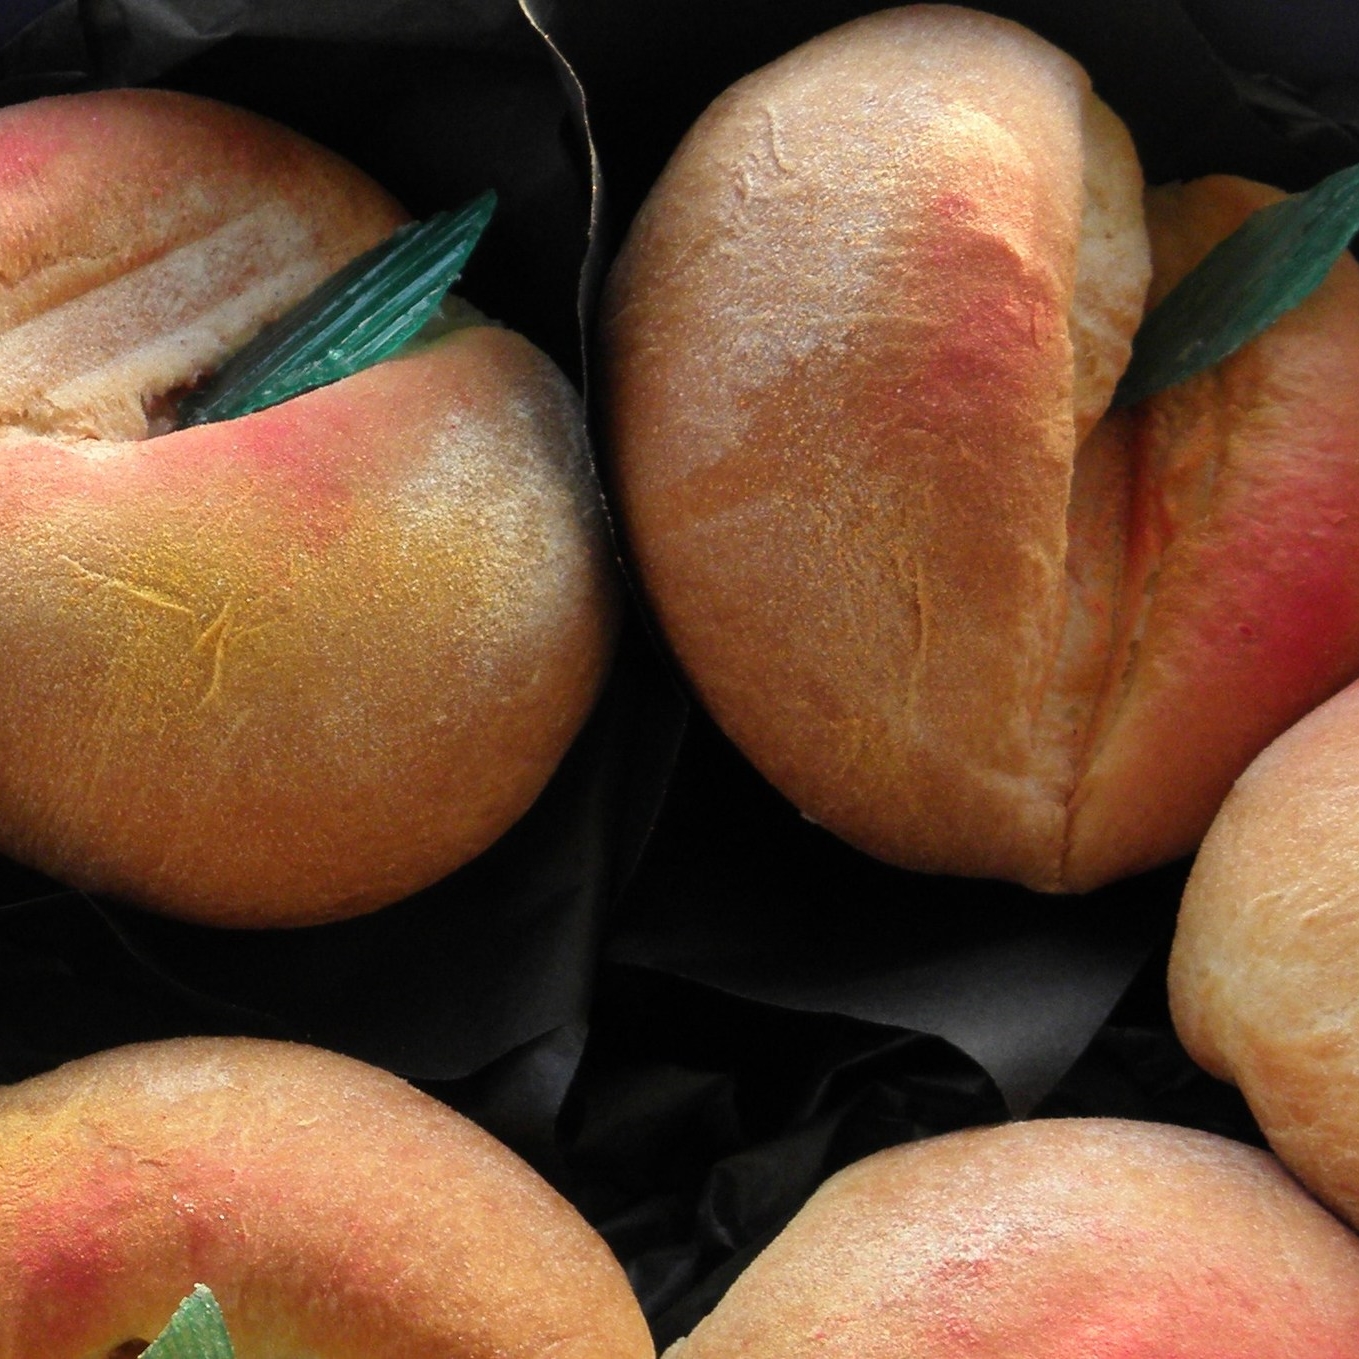 Peachy buns